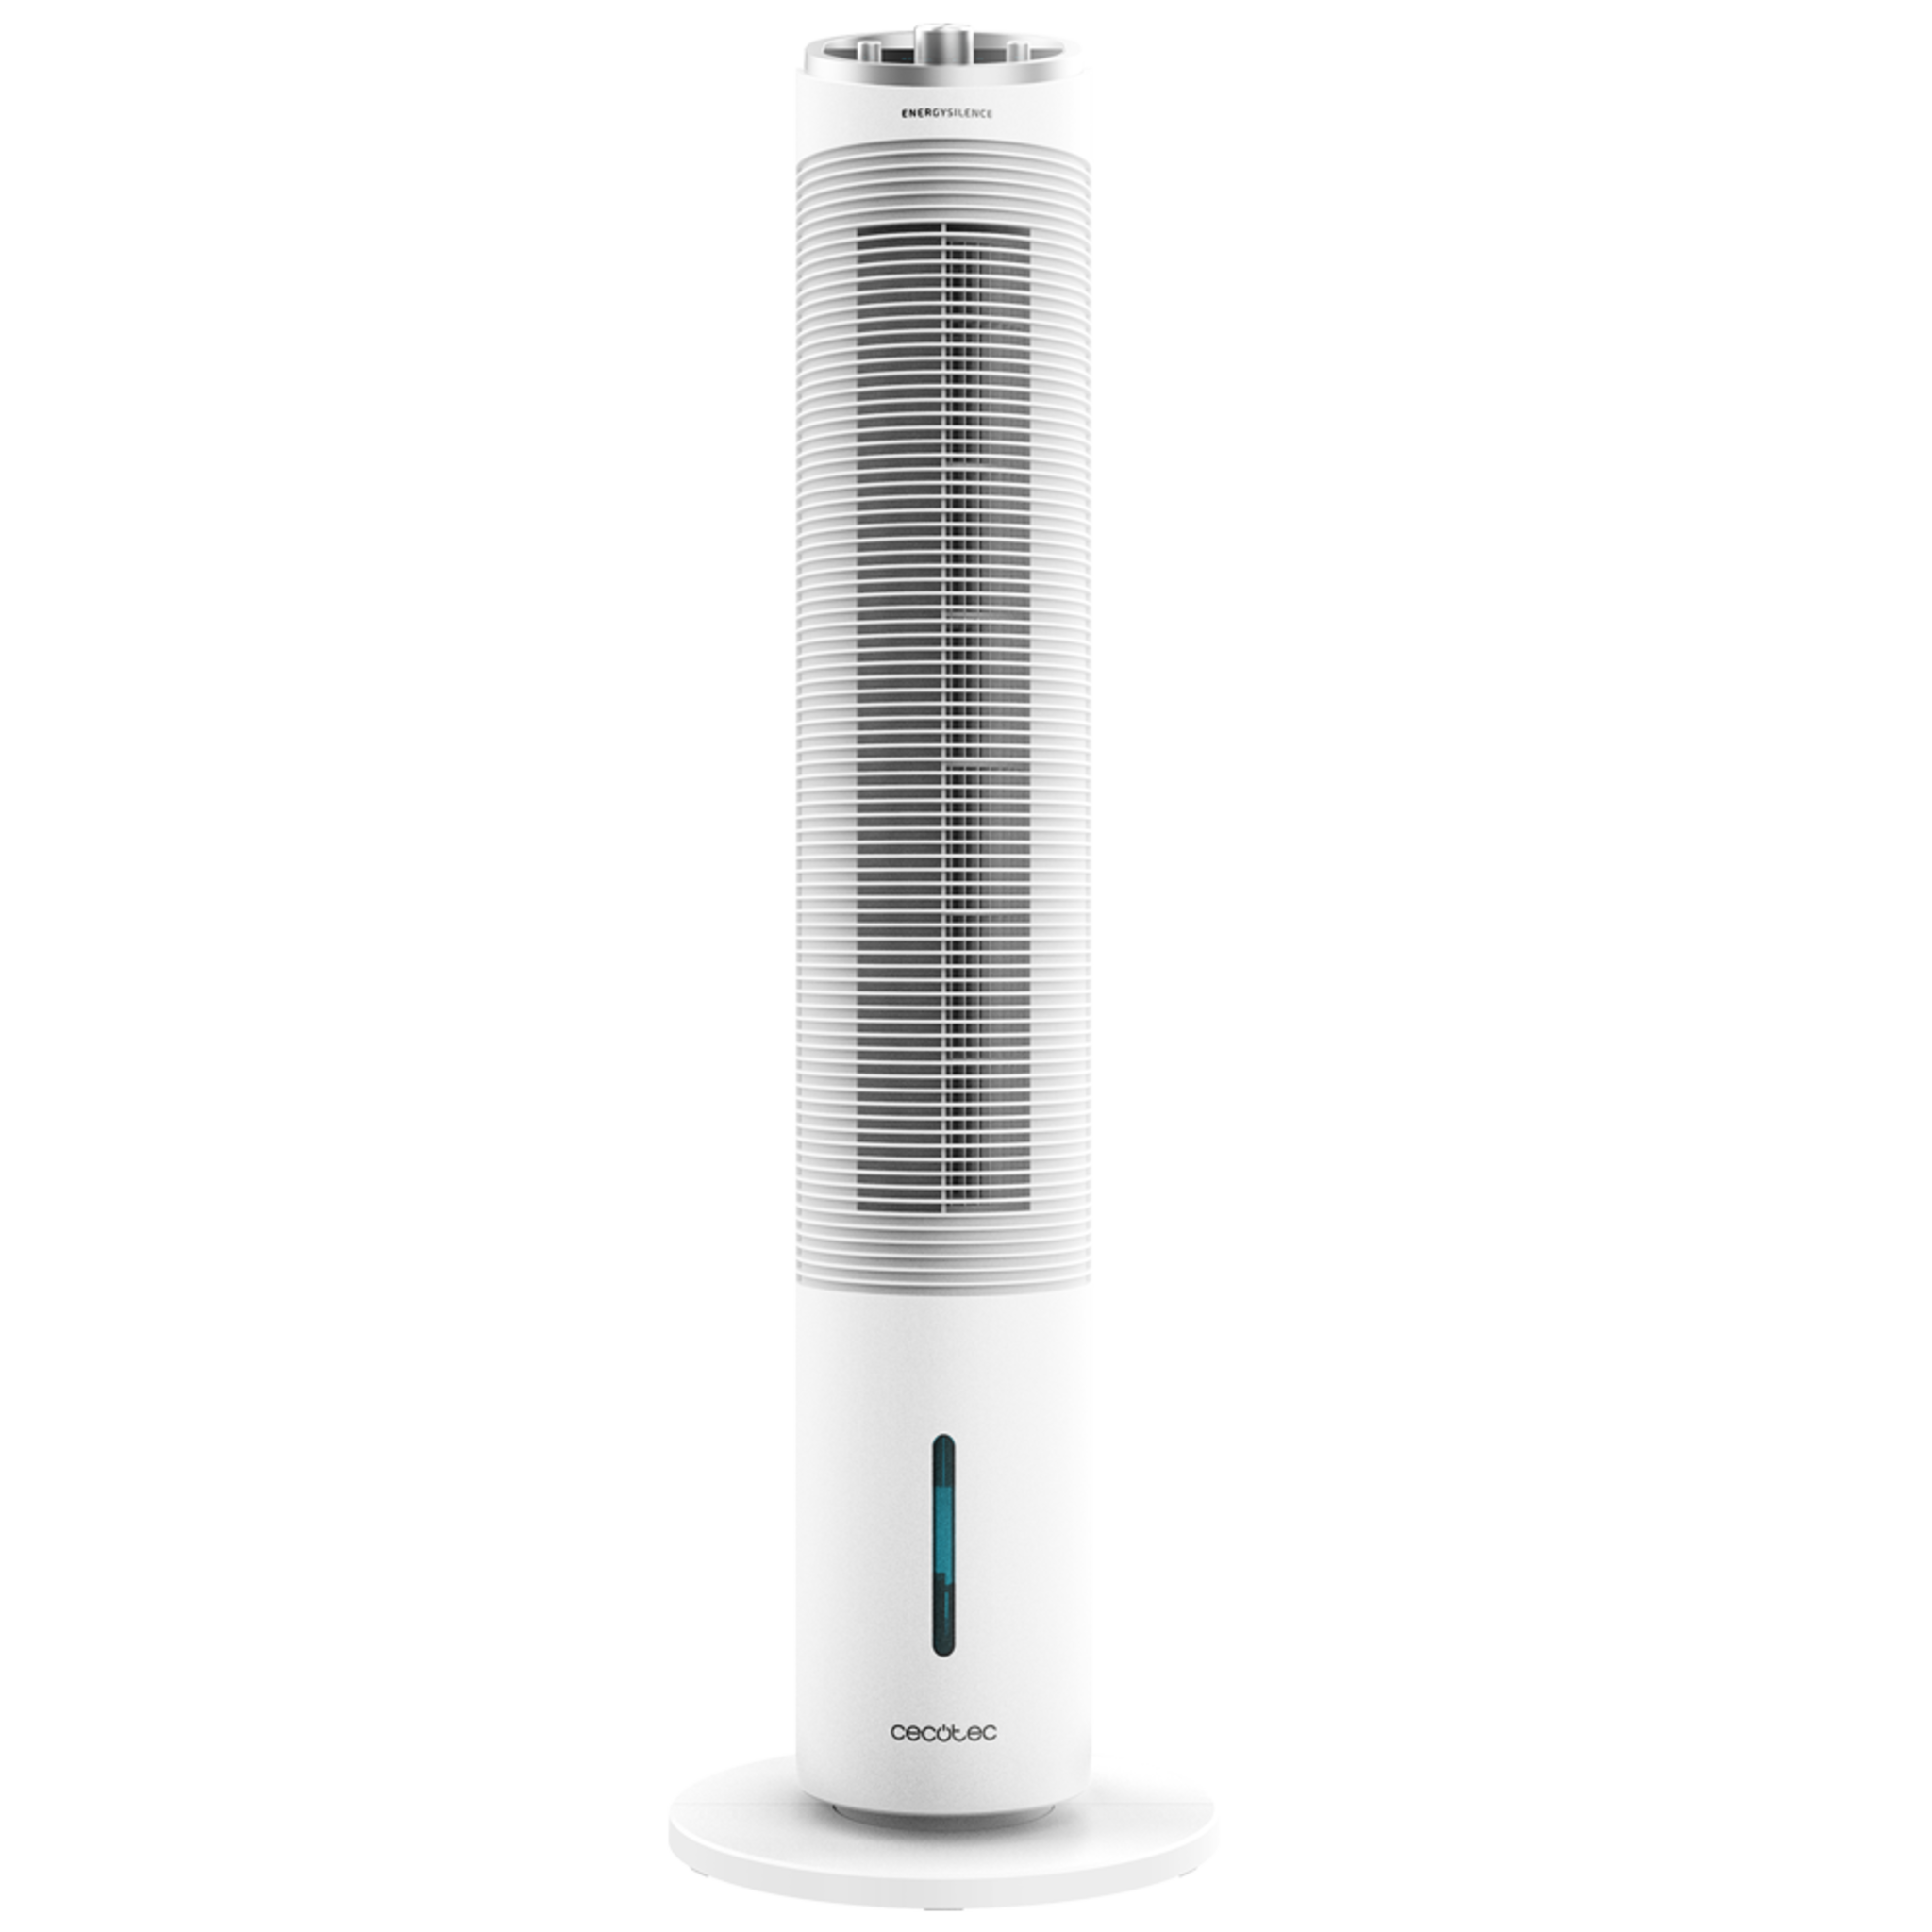 Climatizador evaporativo de Torre EnergySilence 2000 Cool Tower. 60 W, Depósito extraíble de 2 litros, 3 Velocidades, Oscilación de 60º, Caudal de Aire de 800 m3/h